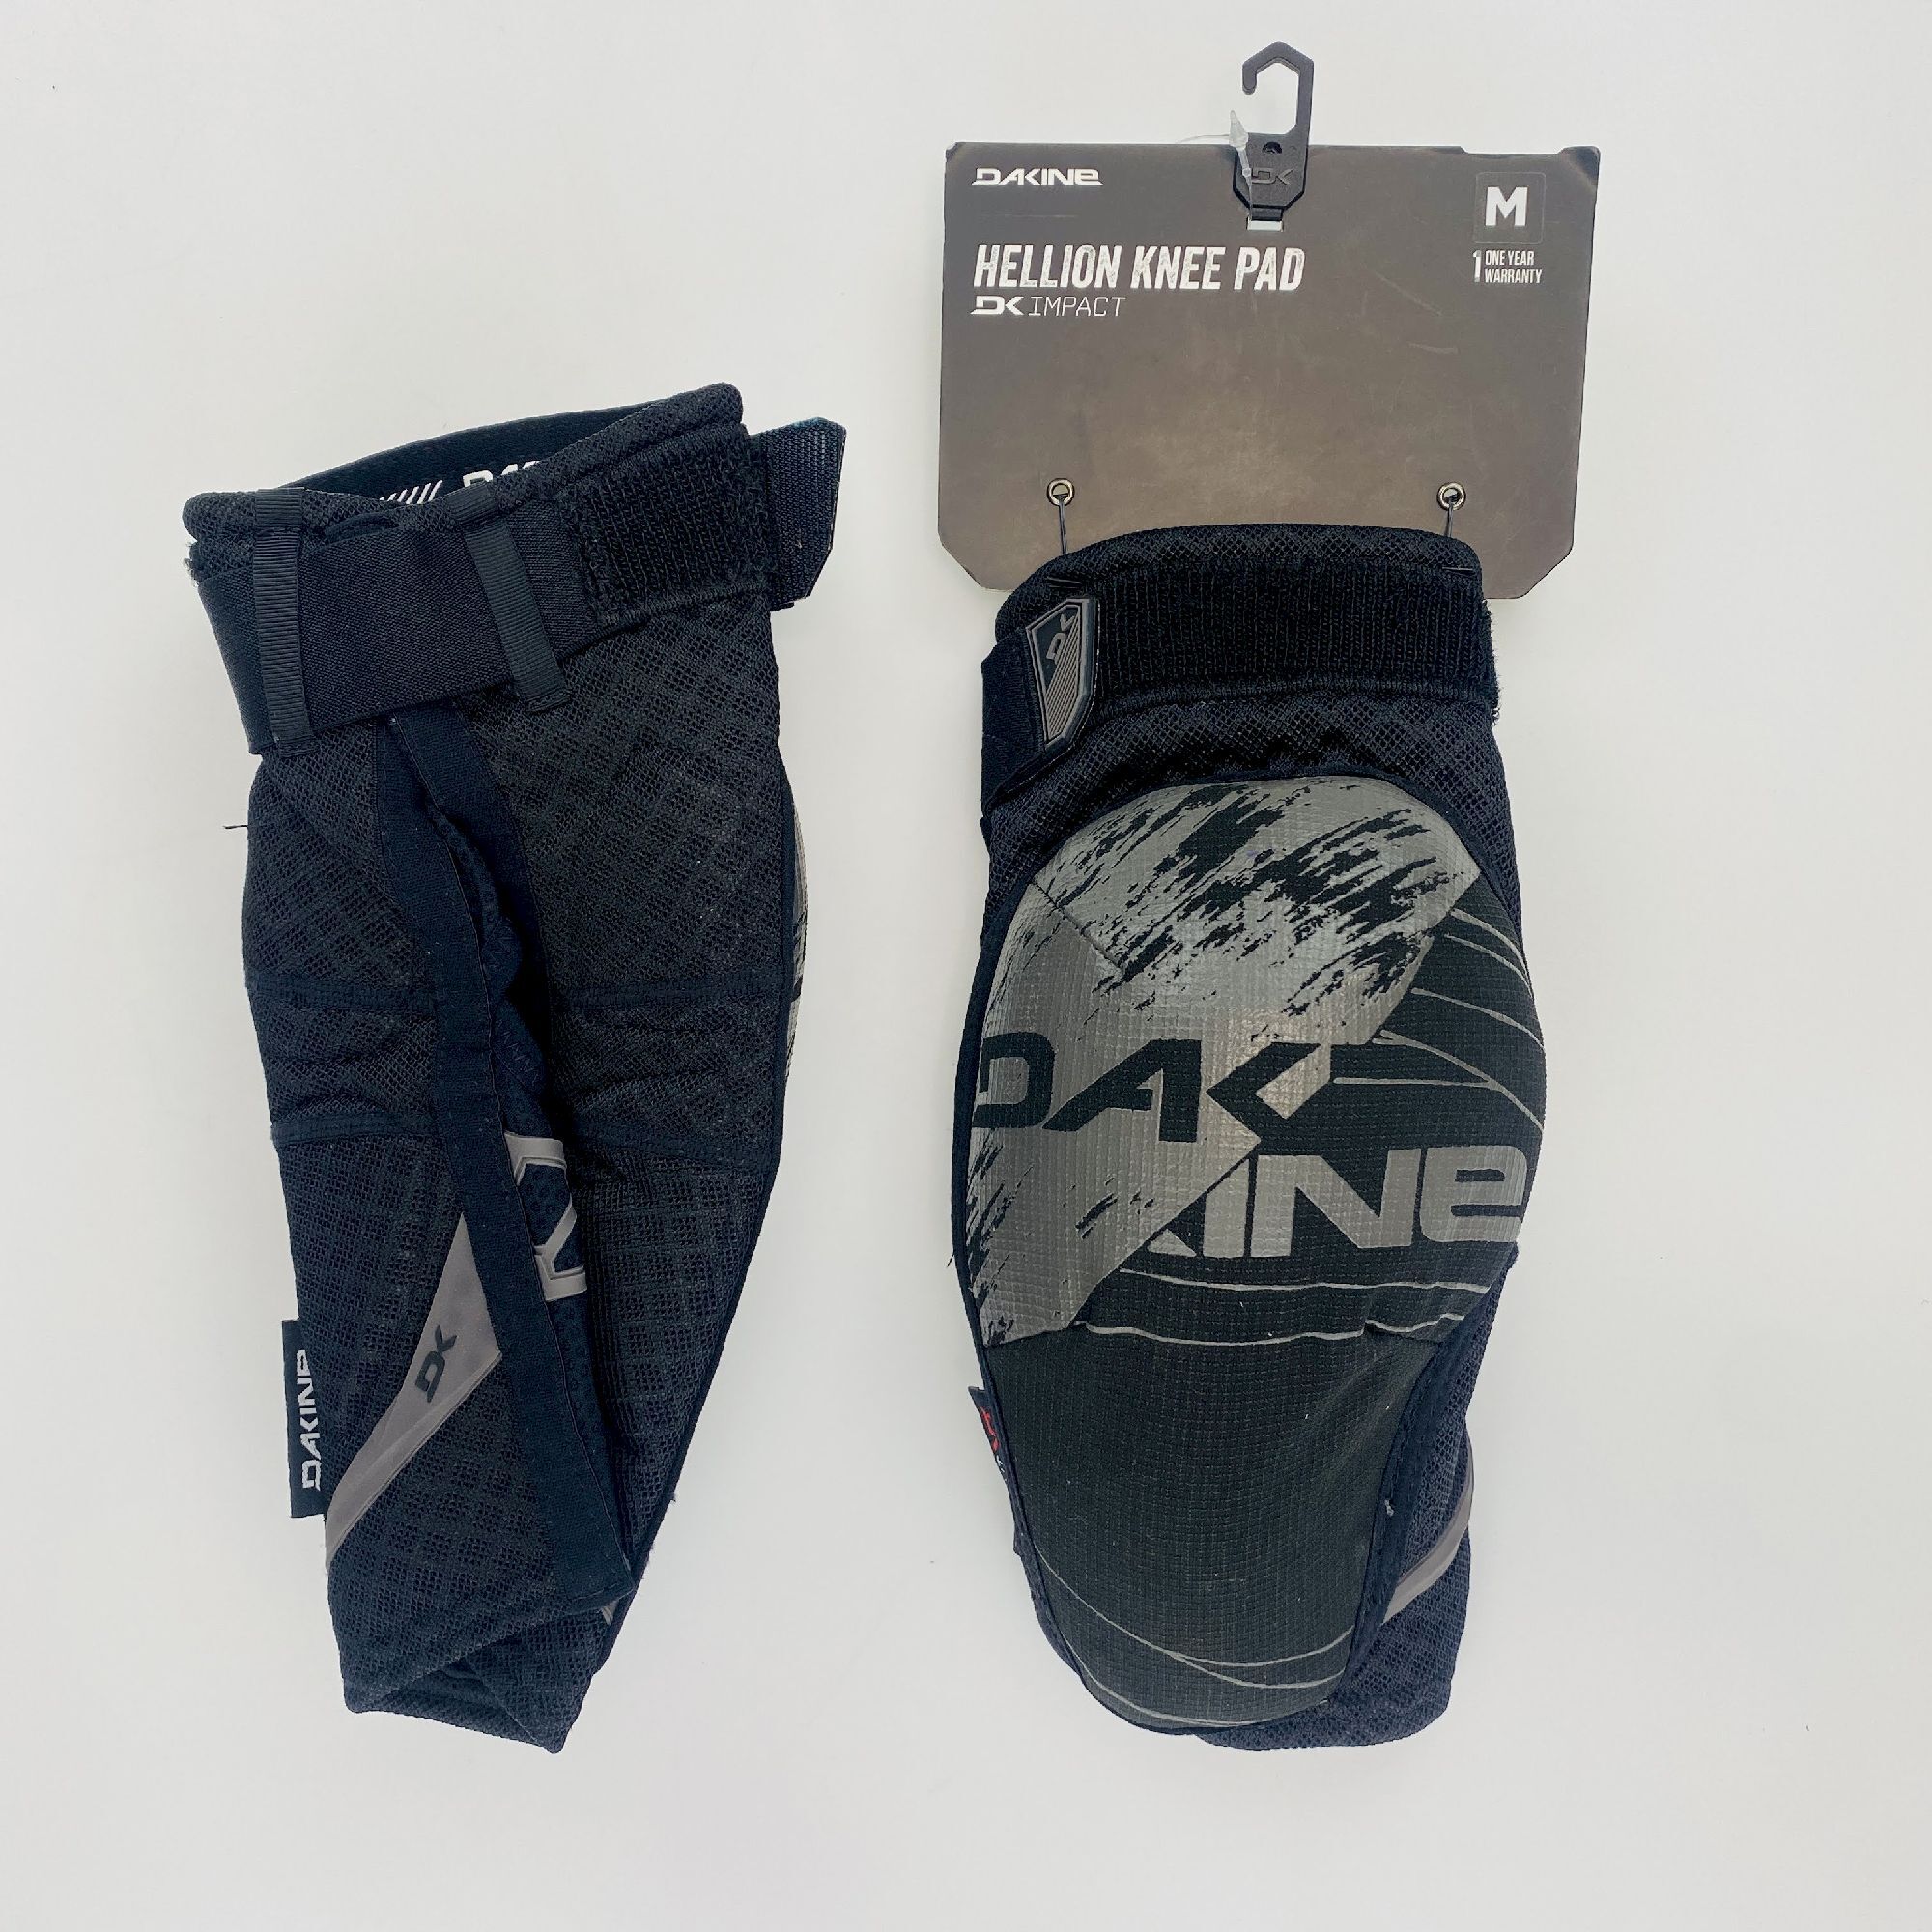 Dakine Hellion Knee Pad - Second hand Chrániče kolen na kolo - Černá - Jedinečná velikost | Hardloop